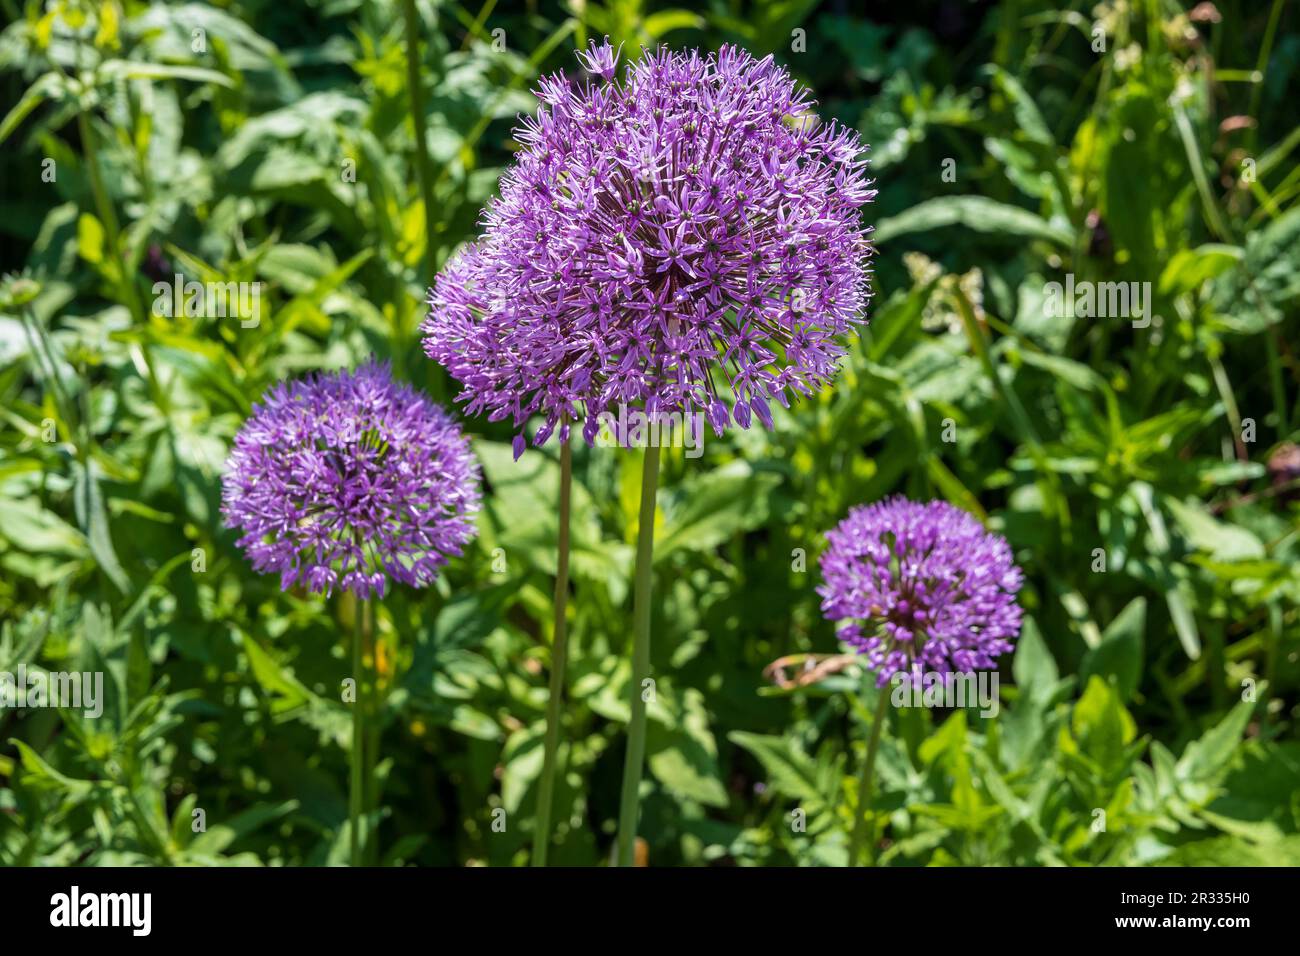 Allium-Blütenköpfe. Allium ist das lateinische Wort für Knoblauch Stockfoto